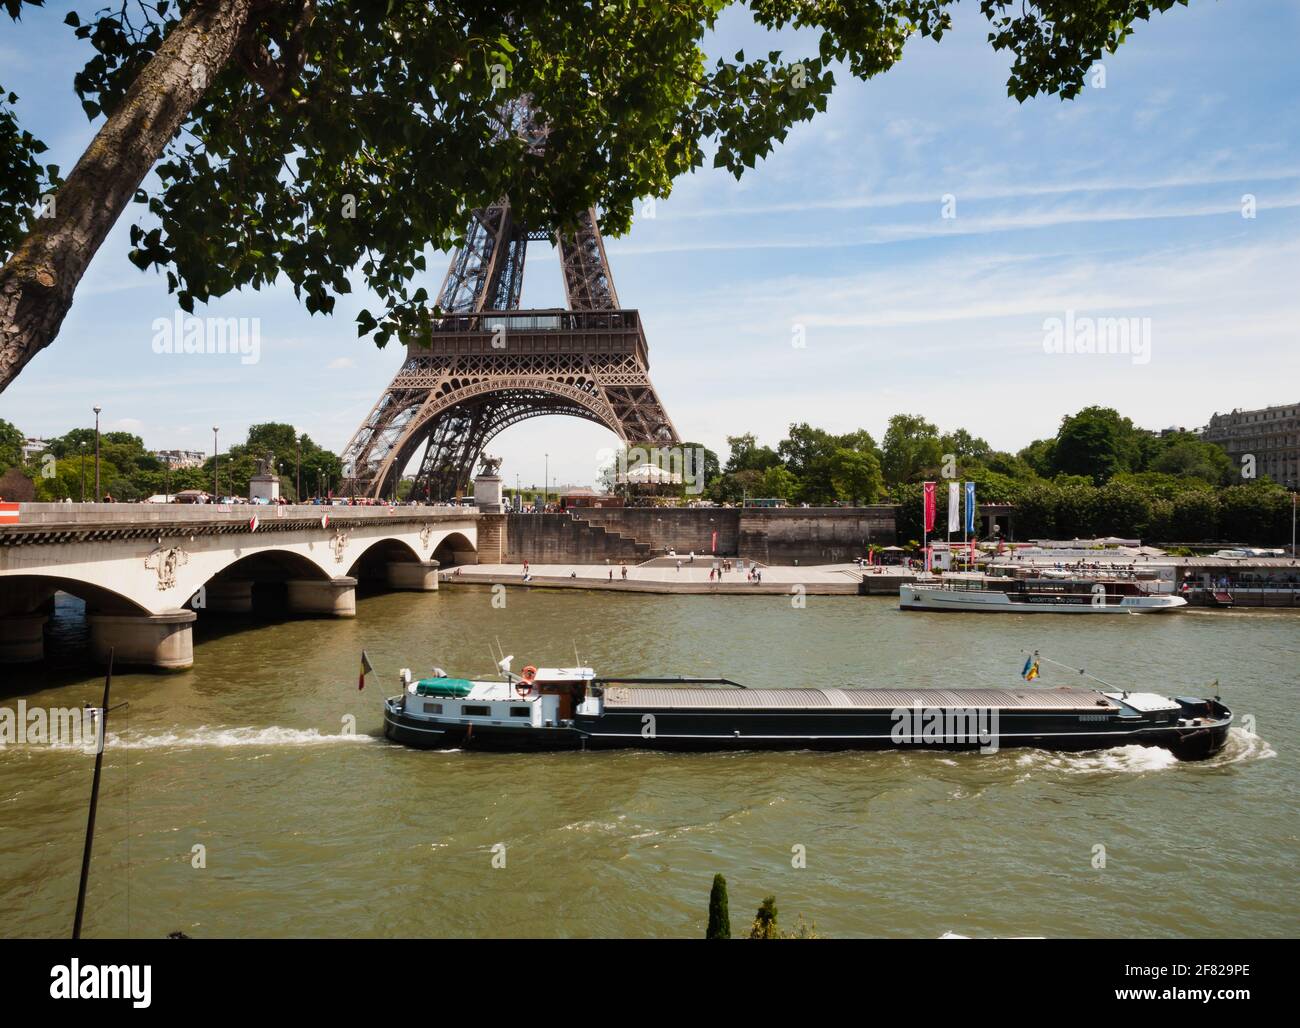 Un bistrot, un ponte, una voz, un passo elegante, un cuore riservato, la vista Improvvisa della Tour Eiffel. Basta poco per innamorarsi a Parigi. Foto de stock